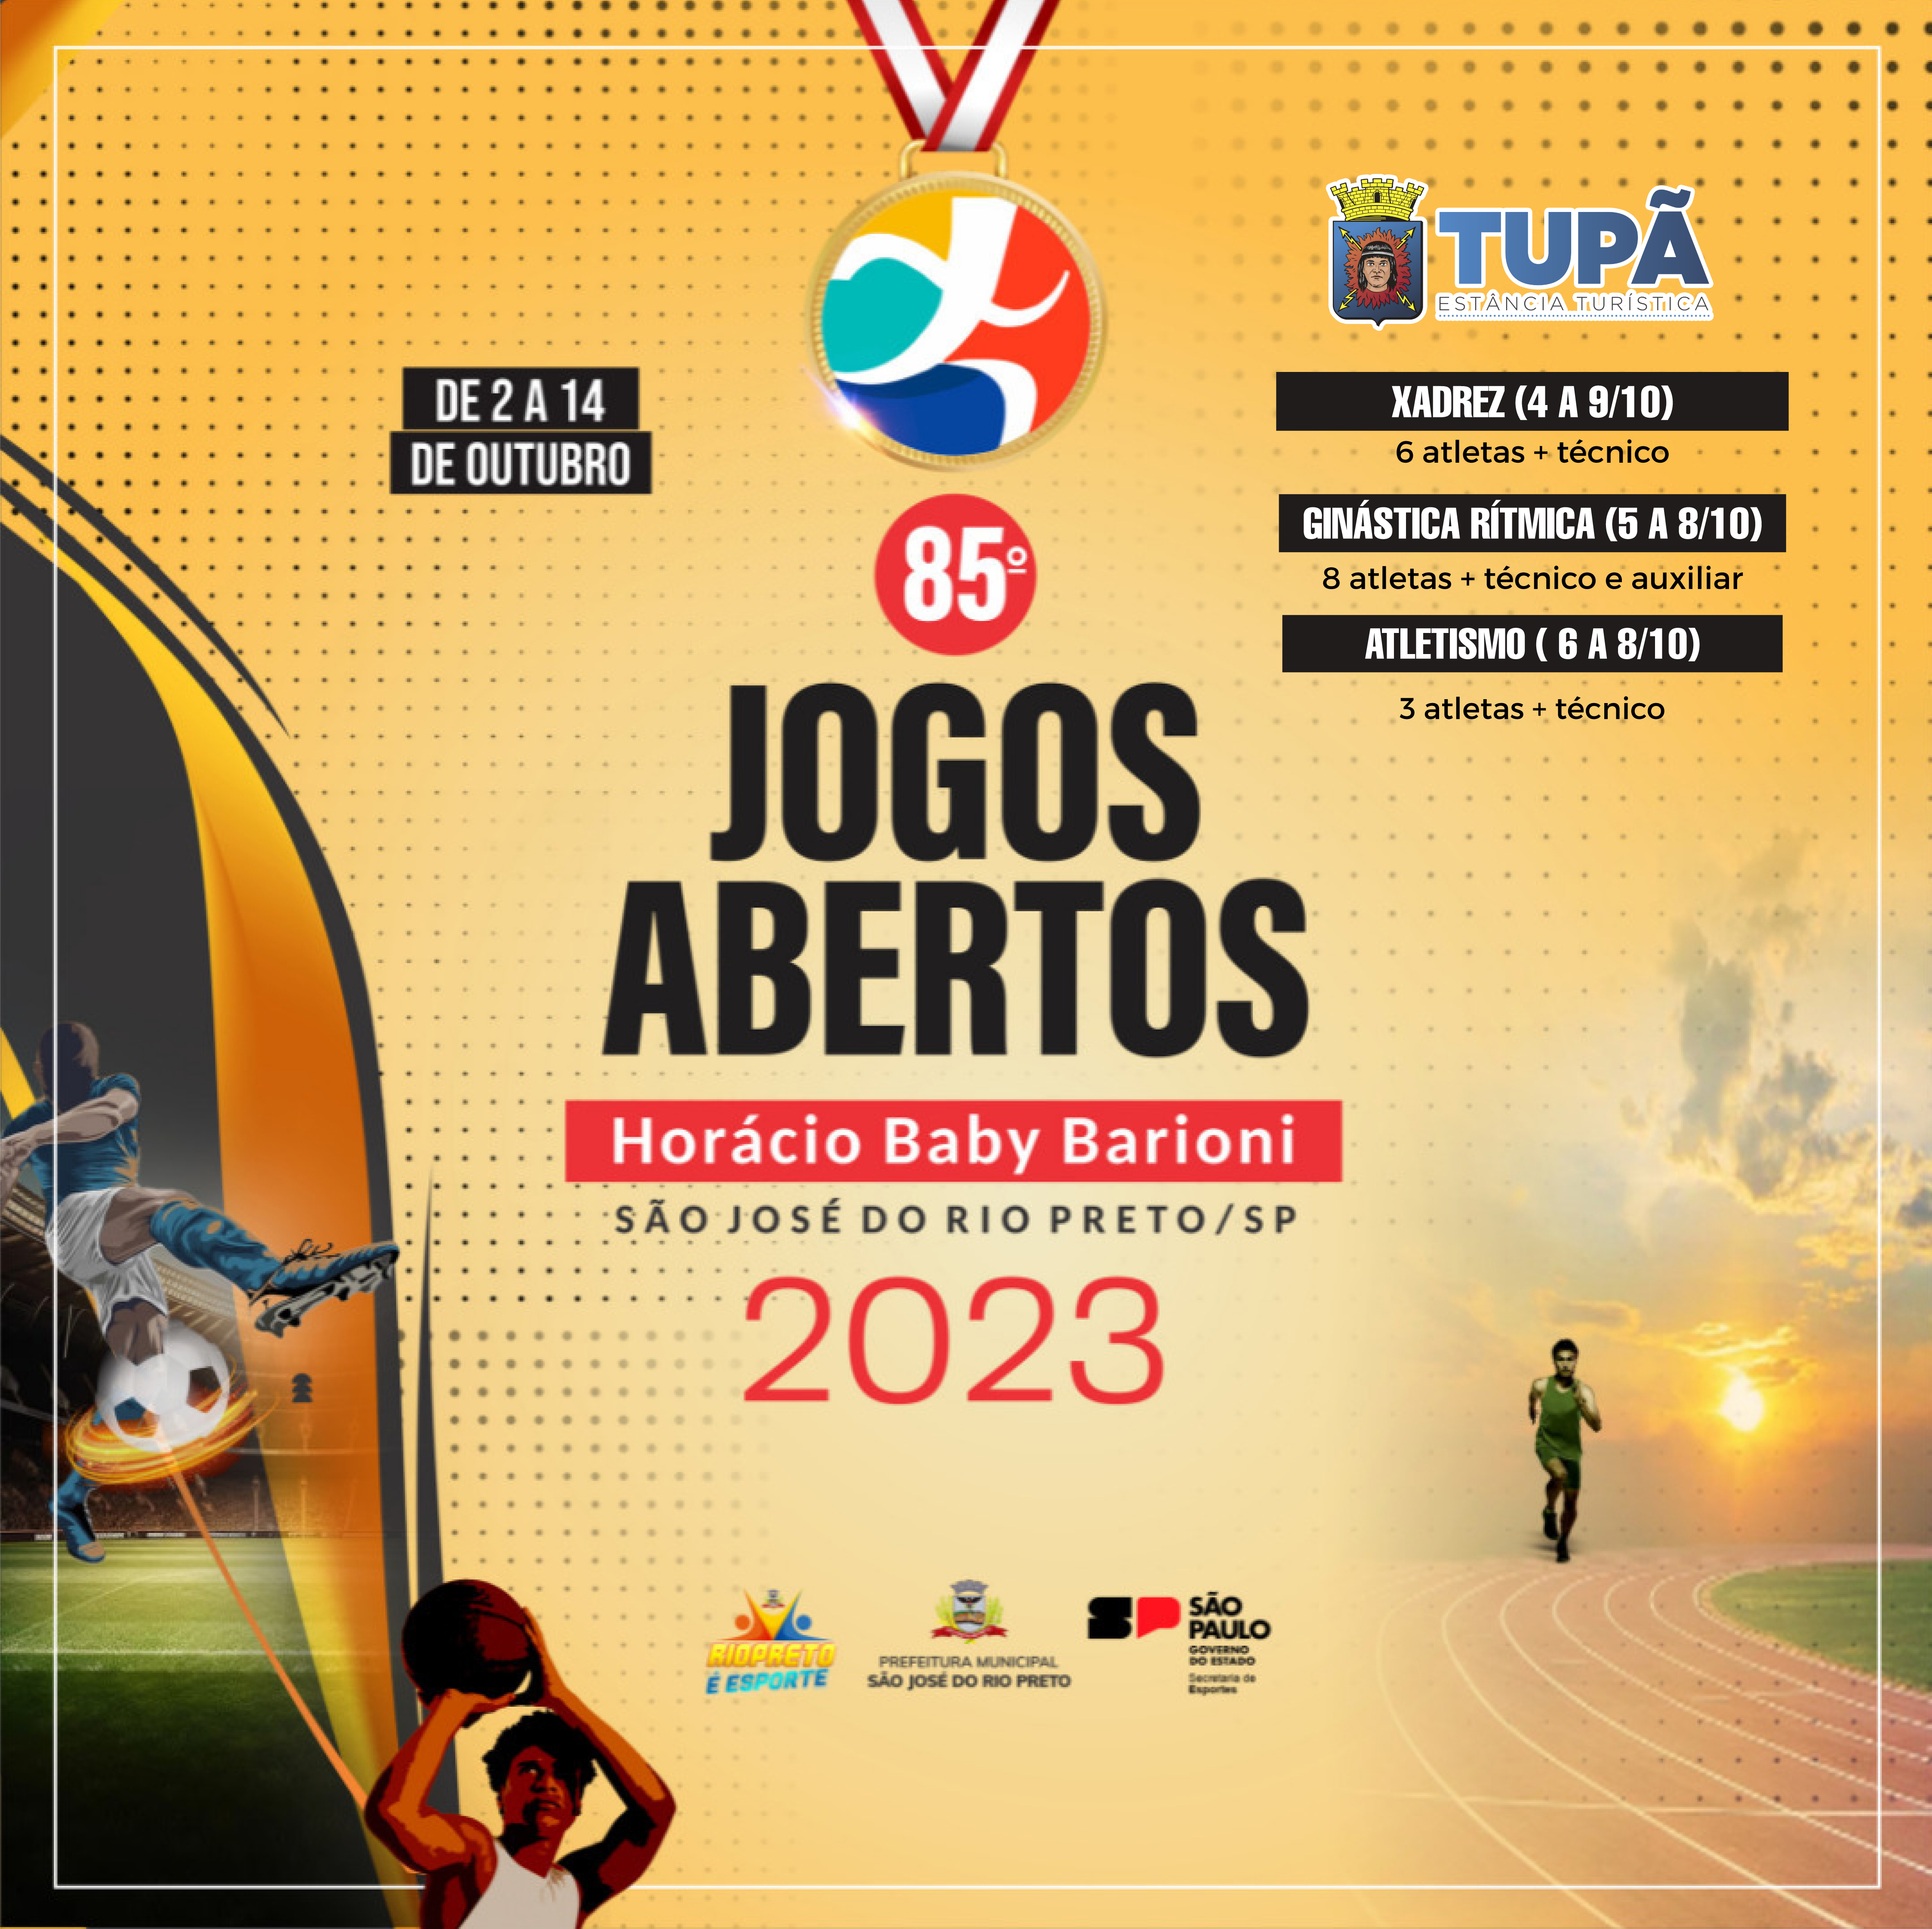 Tupã participará dos Jogos Abertos com delegação composta por 17 atletas